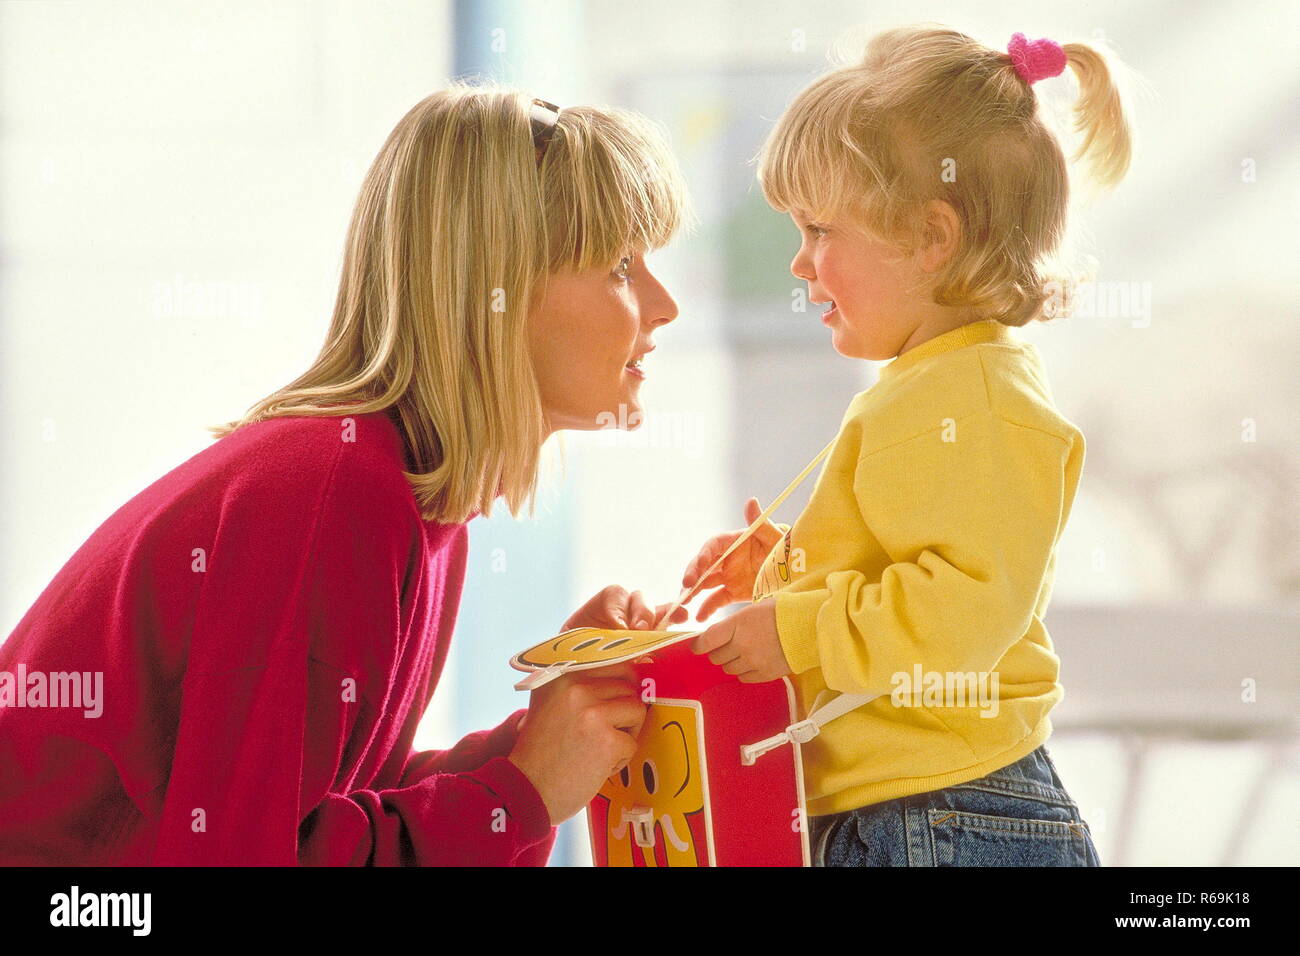 Mutter mit blonden Haar kauert vor ihrer blond bezopften Tochter, 4 Jahre, die eine grosse rot-gelbe Kindergartentasche traegt und spricht beruhigend auf sie ein Stock Photo